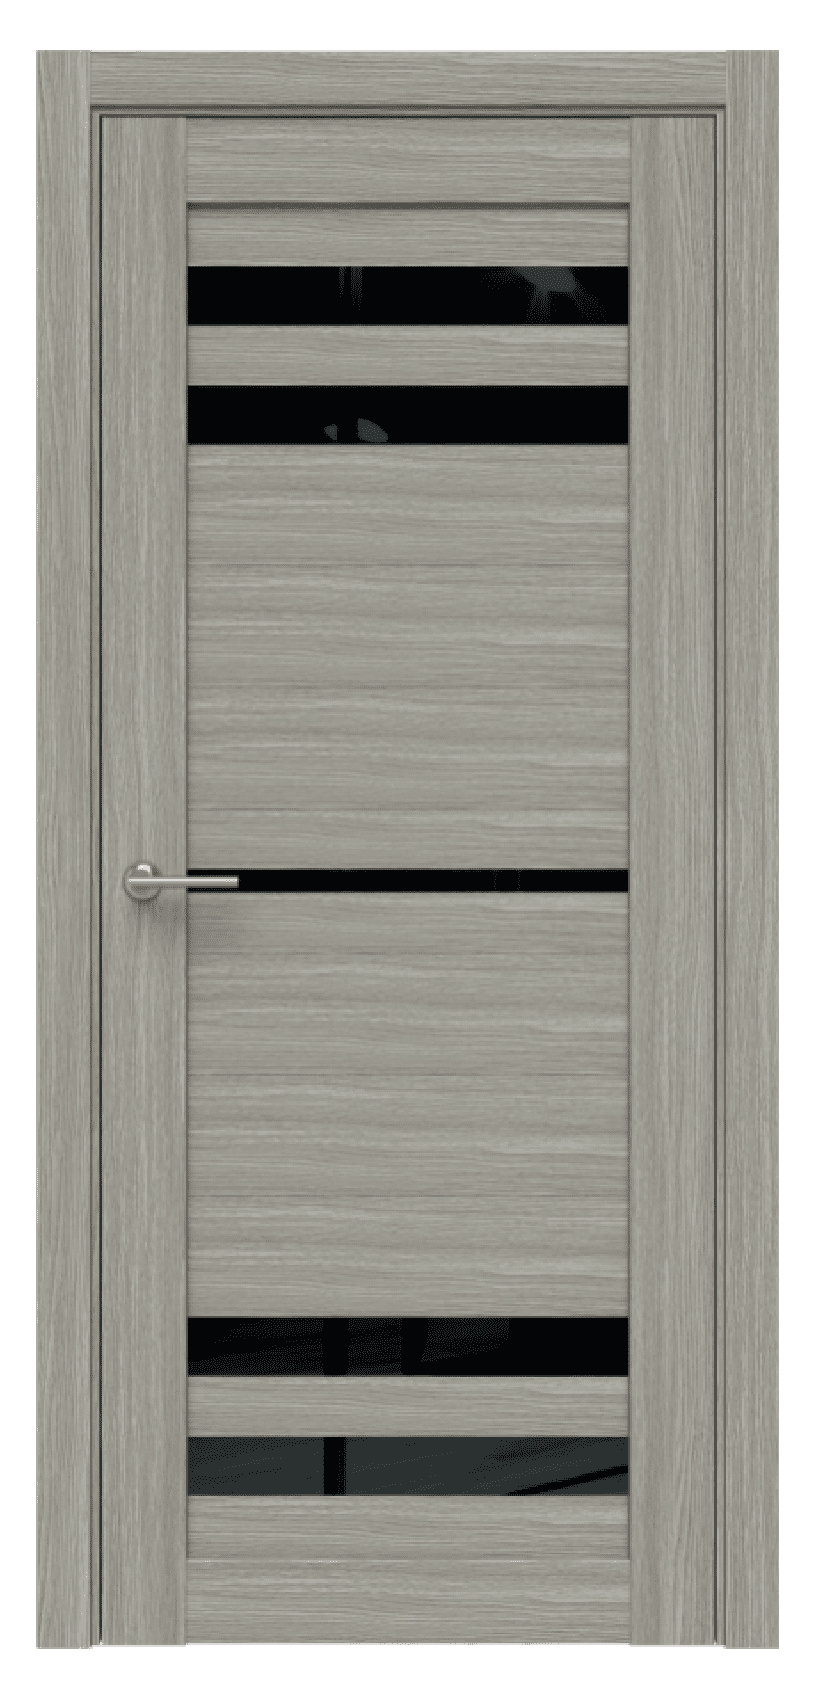 Questdoors Межкомнатная дверь Q23, арт. 17468 - фото №1